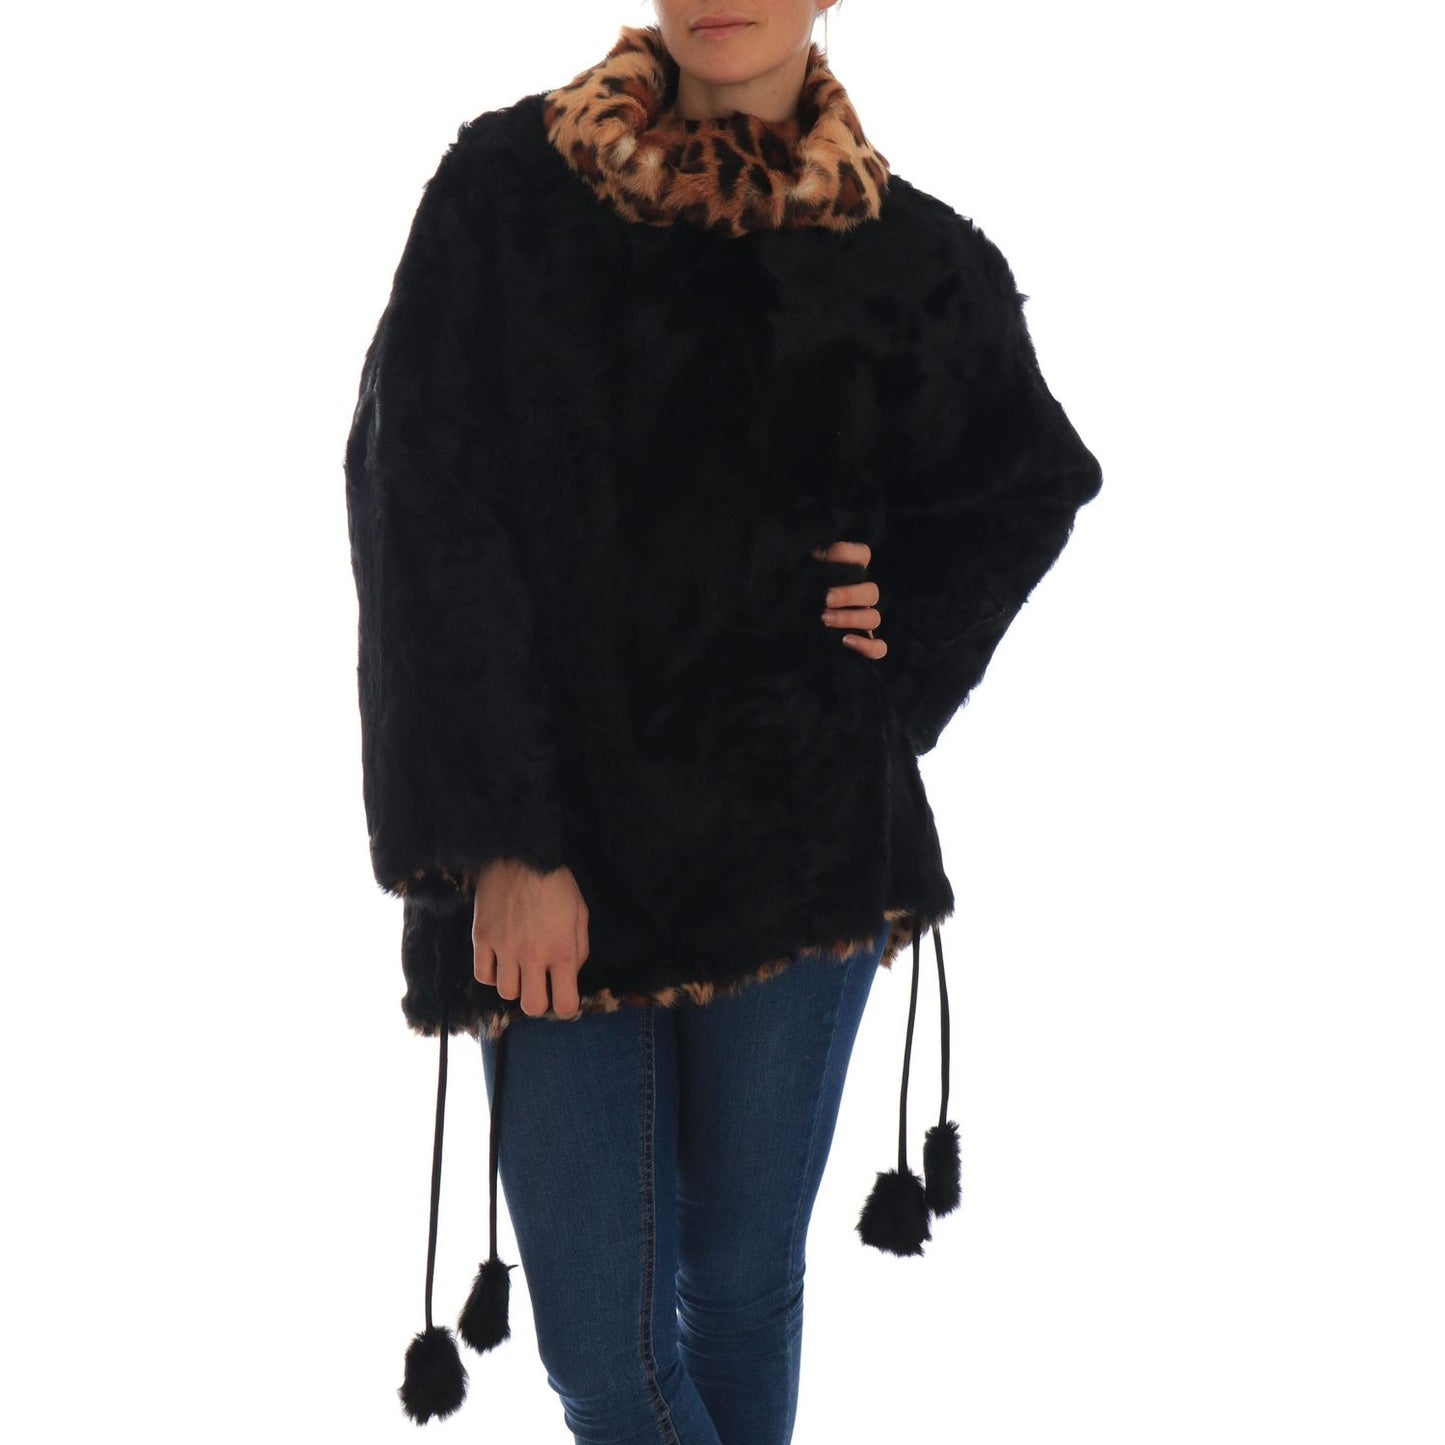 Dolce & Gabbana Elegant Black Lamb Fur Short Coat black-lamb-leopard-print-fur-coat-jacket 654682-black-lamb-leopard-print-fur-coat-jacket-5.jpg